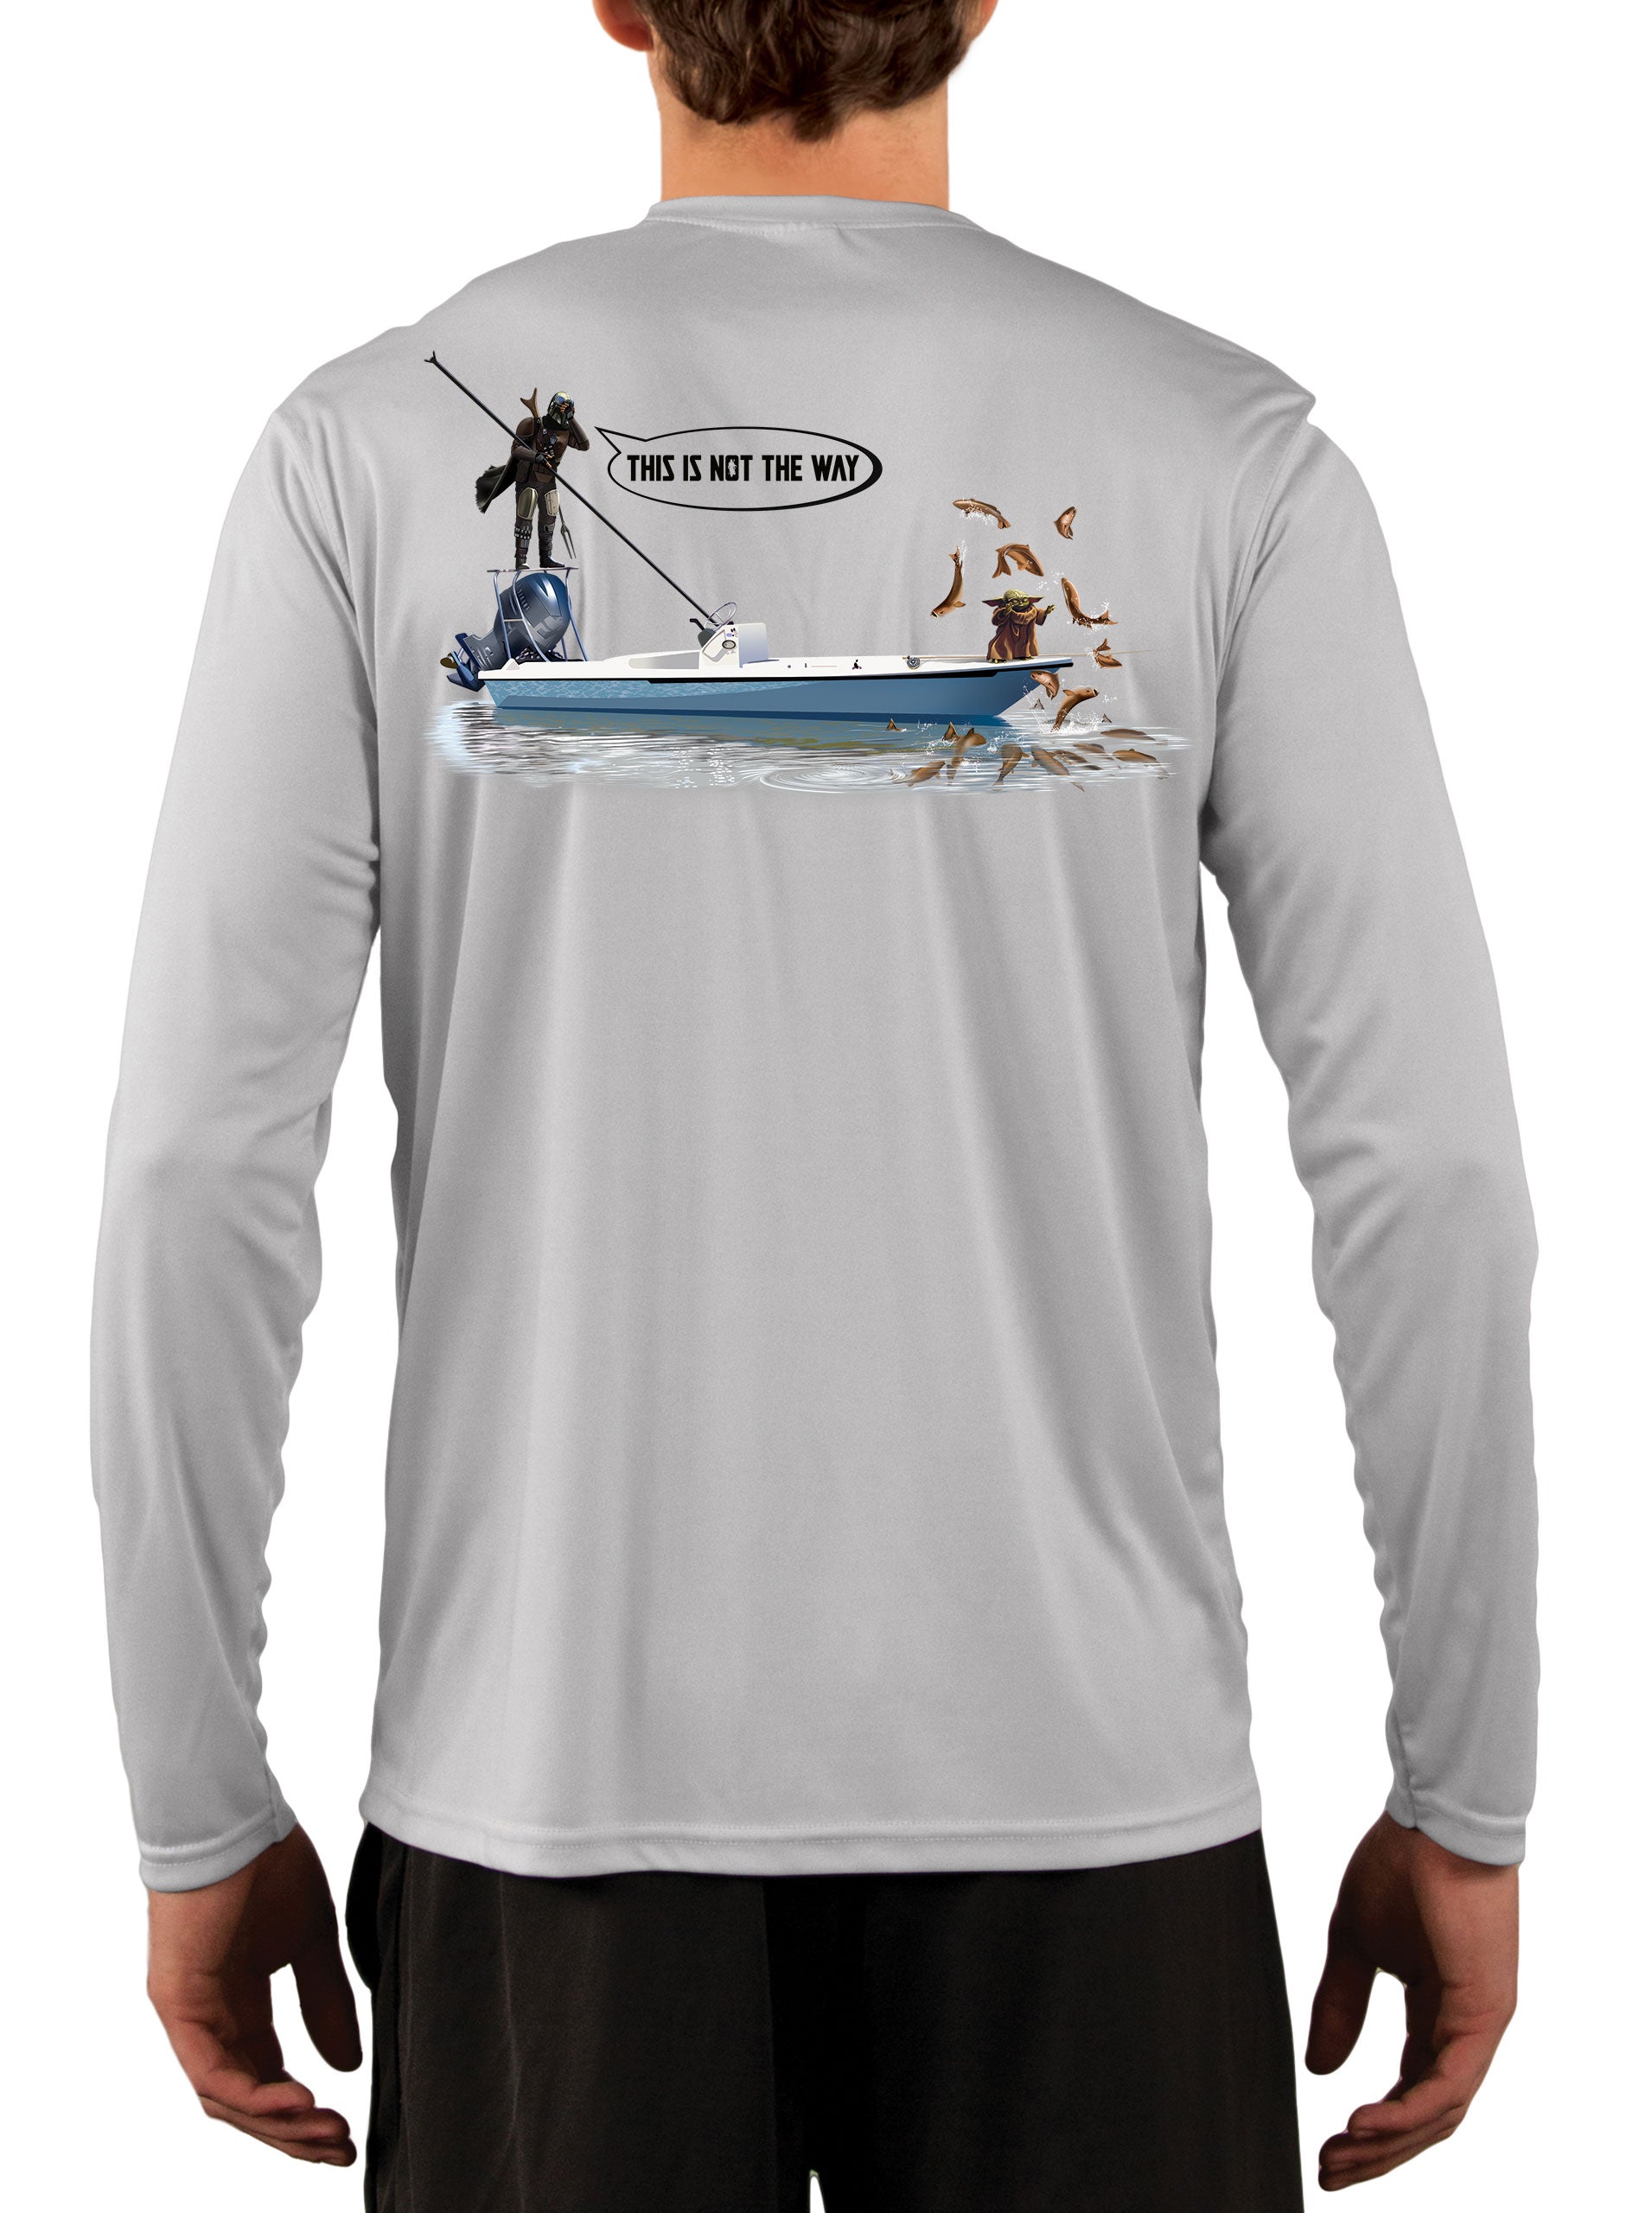 Mandalorian Grogu Baby Yoda Fishing Shirts For Men Star Wars